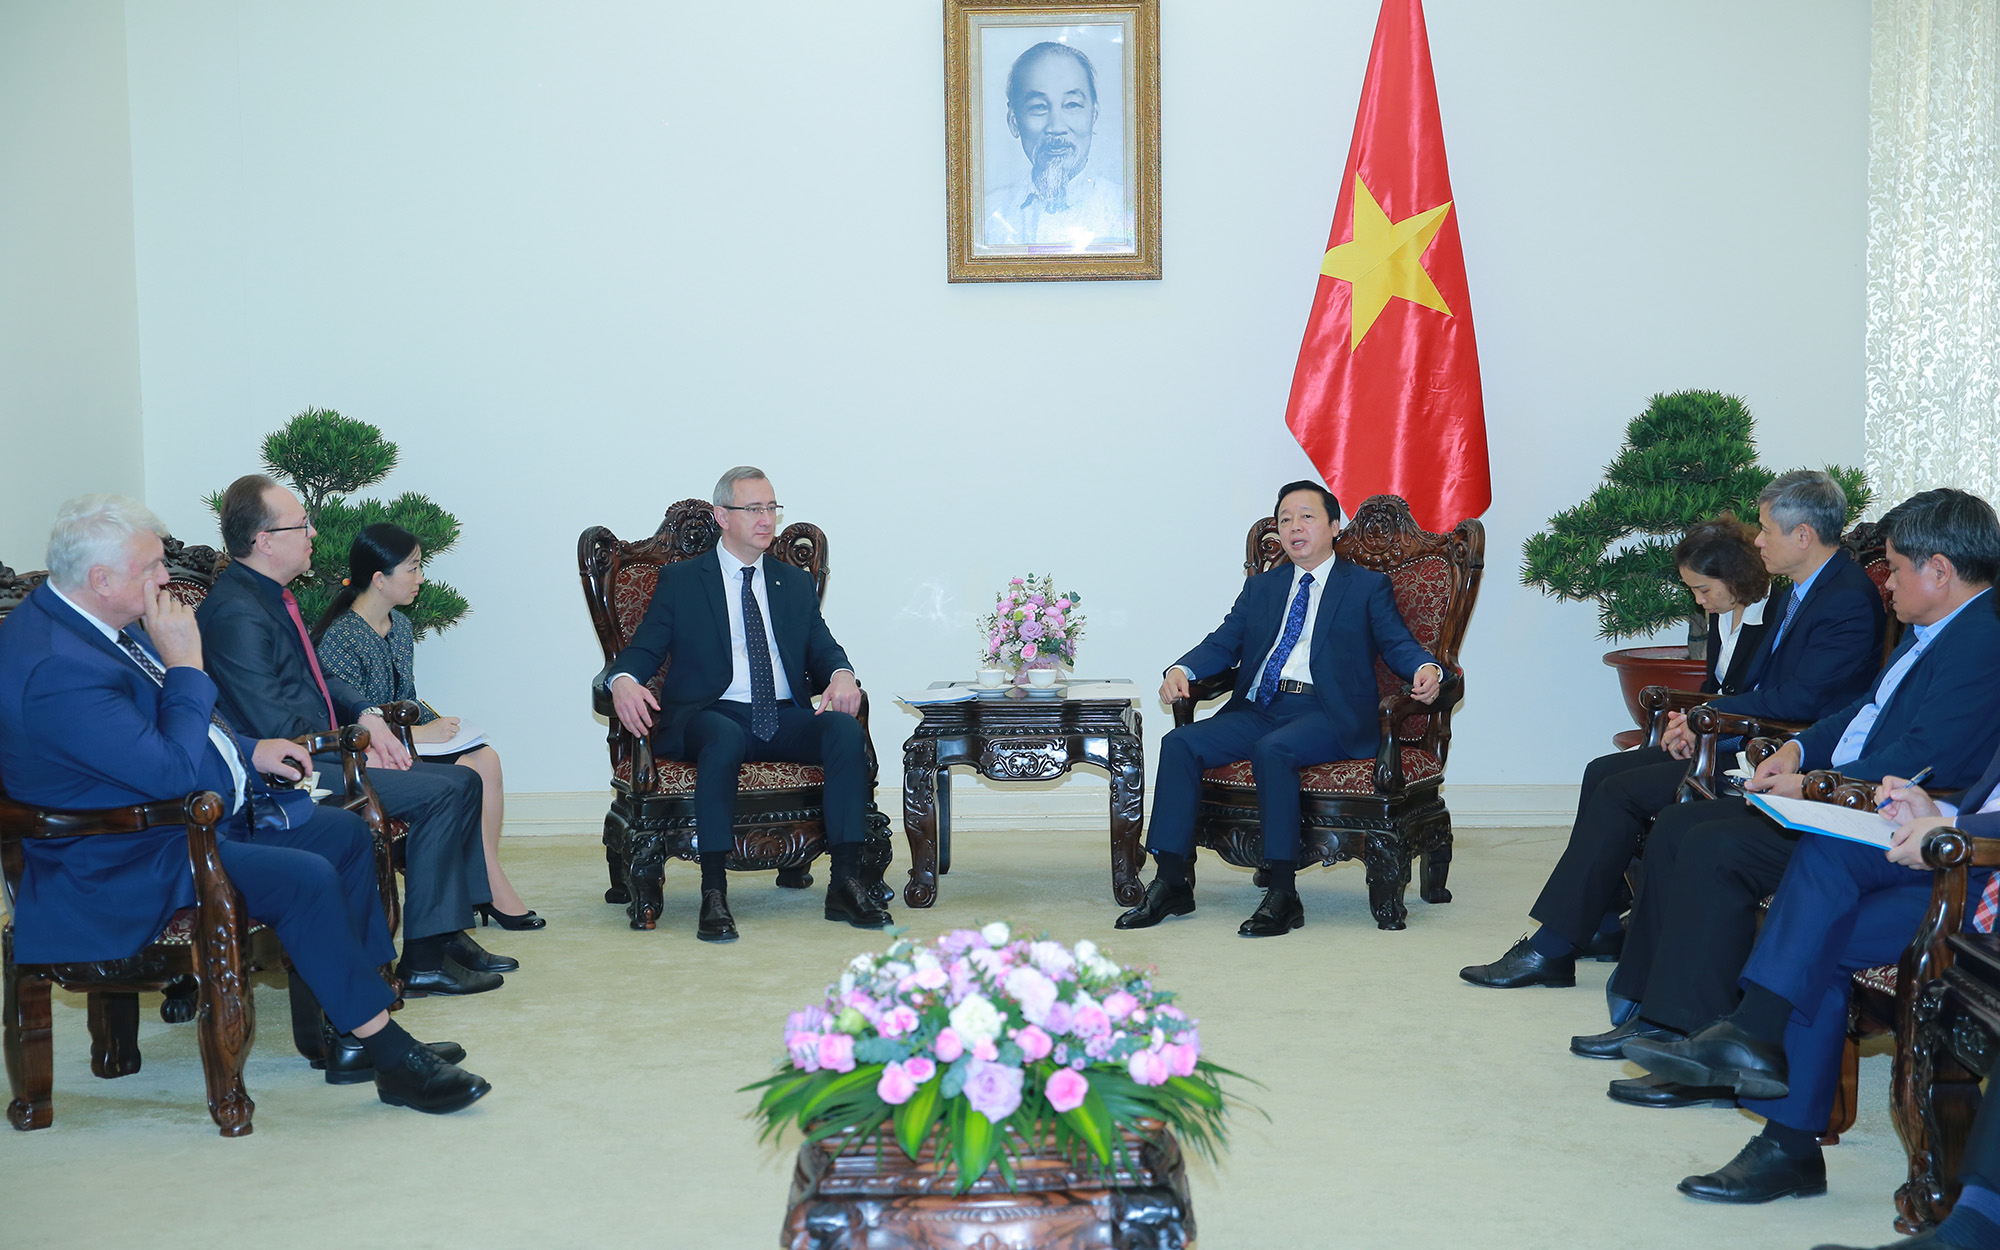 Thống đốc Vasilav Valerievich Shapsha bày tỏ mong muốn các doanh nghiệp của Việt Nam sẽ đầu tư vào những lĩnh vực là thế mạnh của tỉnh Kaluga, như nông nghiệp, công nghiệp chế tạo, dược phẩm… - Ảnh: VGP/Minh Khôi